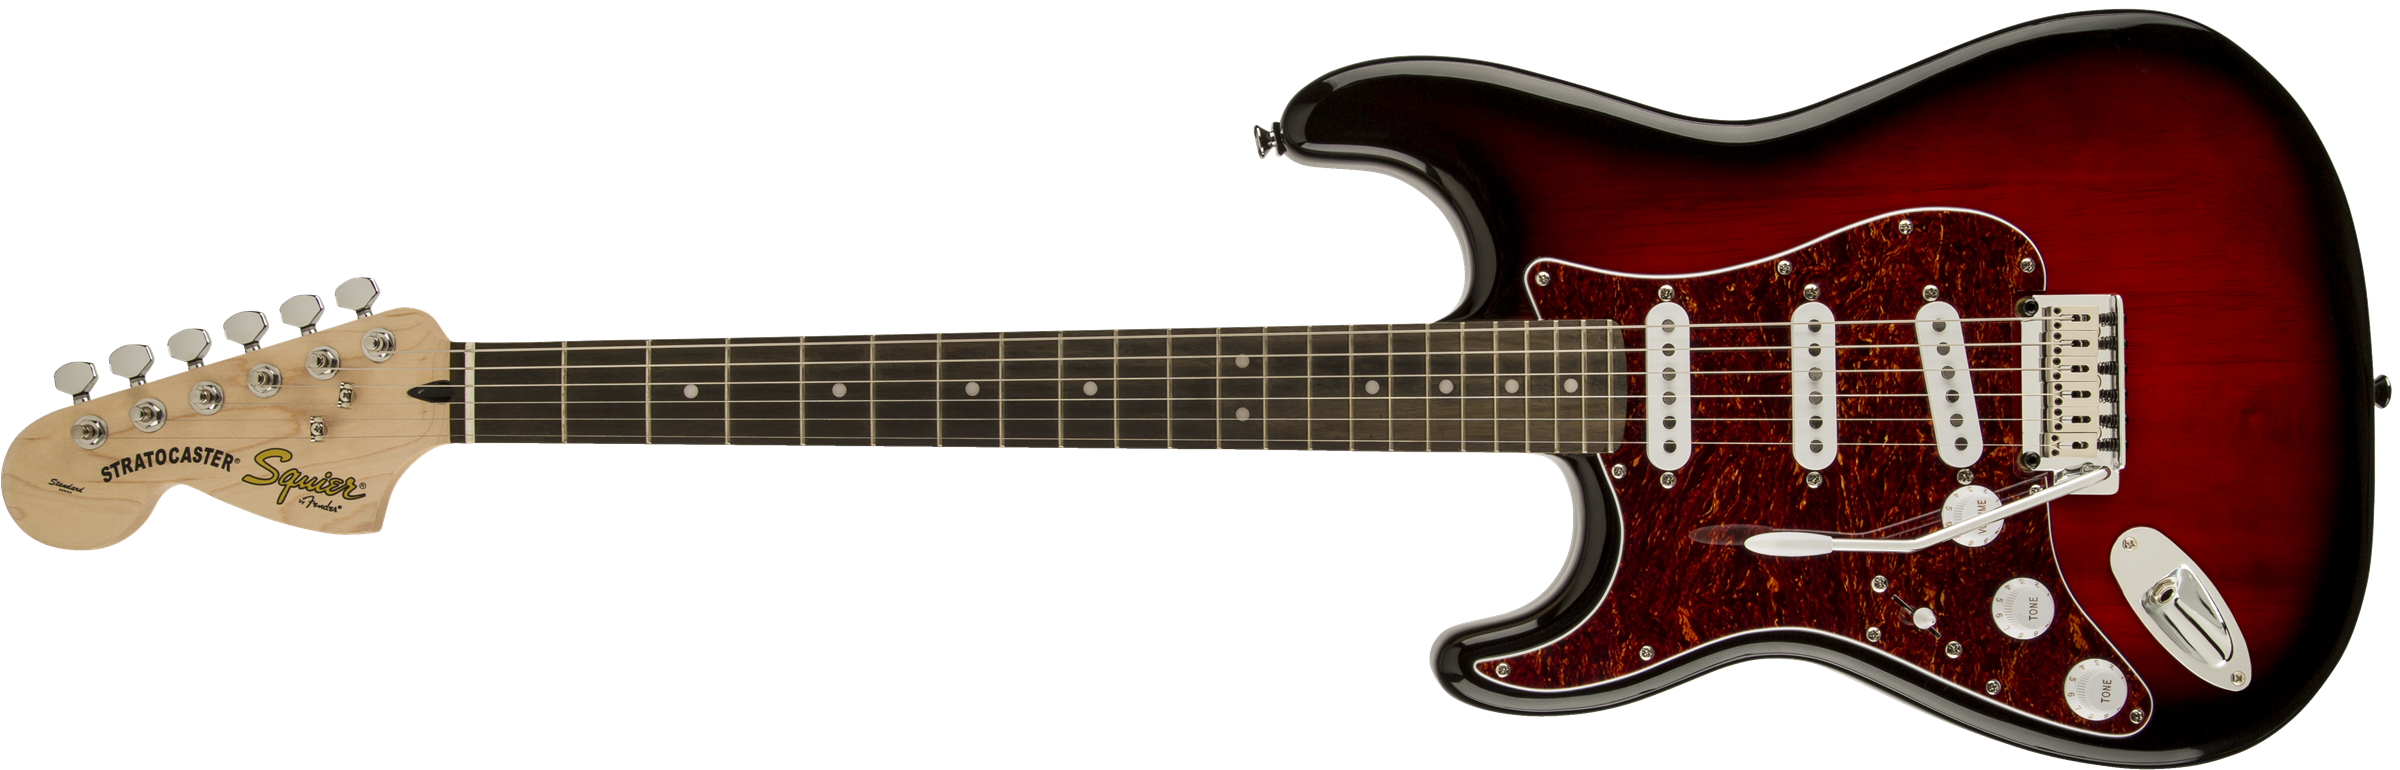 Squier® Standard Stratocaster® Left-Handed, Rosewood Fingerboard, Antique Burst